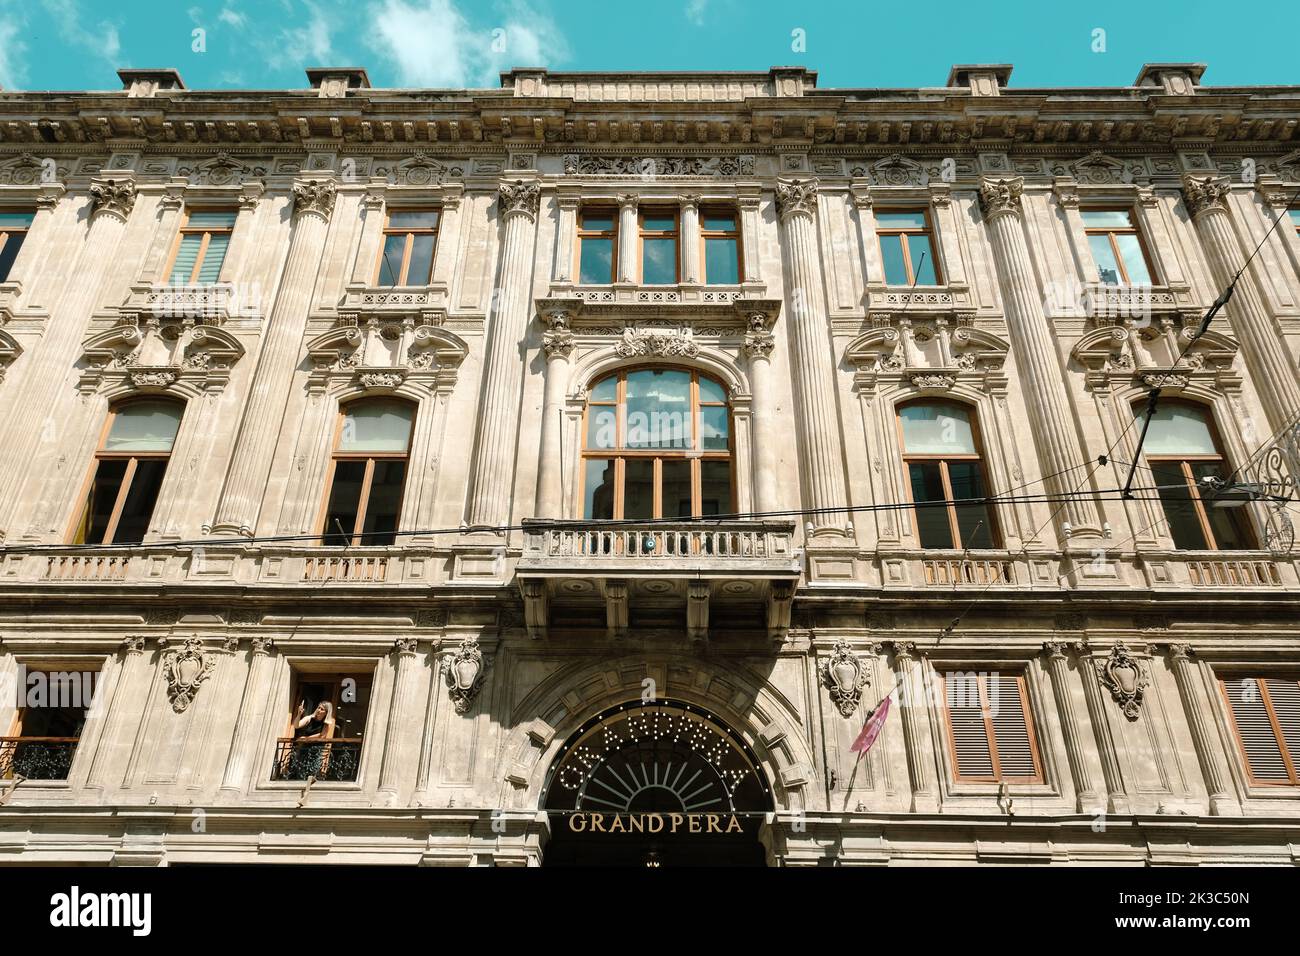 Grand Pera bâtiment dans la rue Istiklal, structure historique à Istanbul, Voyage et explorer l'idée, la structure esthétique, la séquence architecturale Banque D'Images